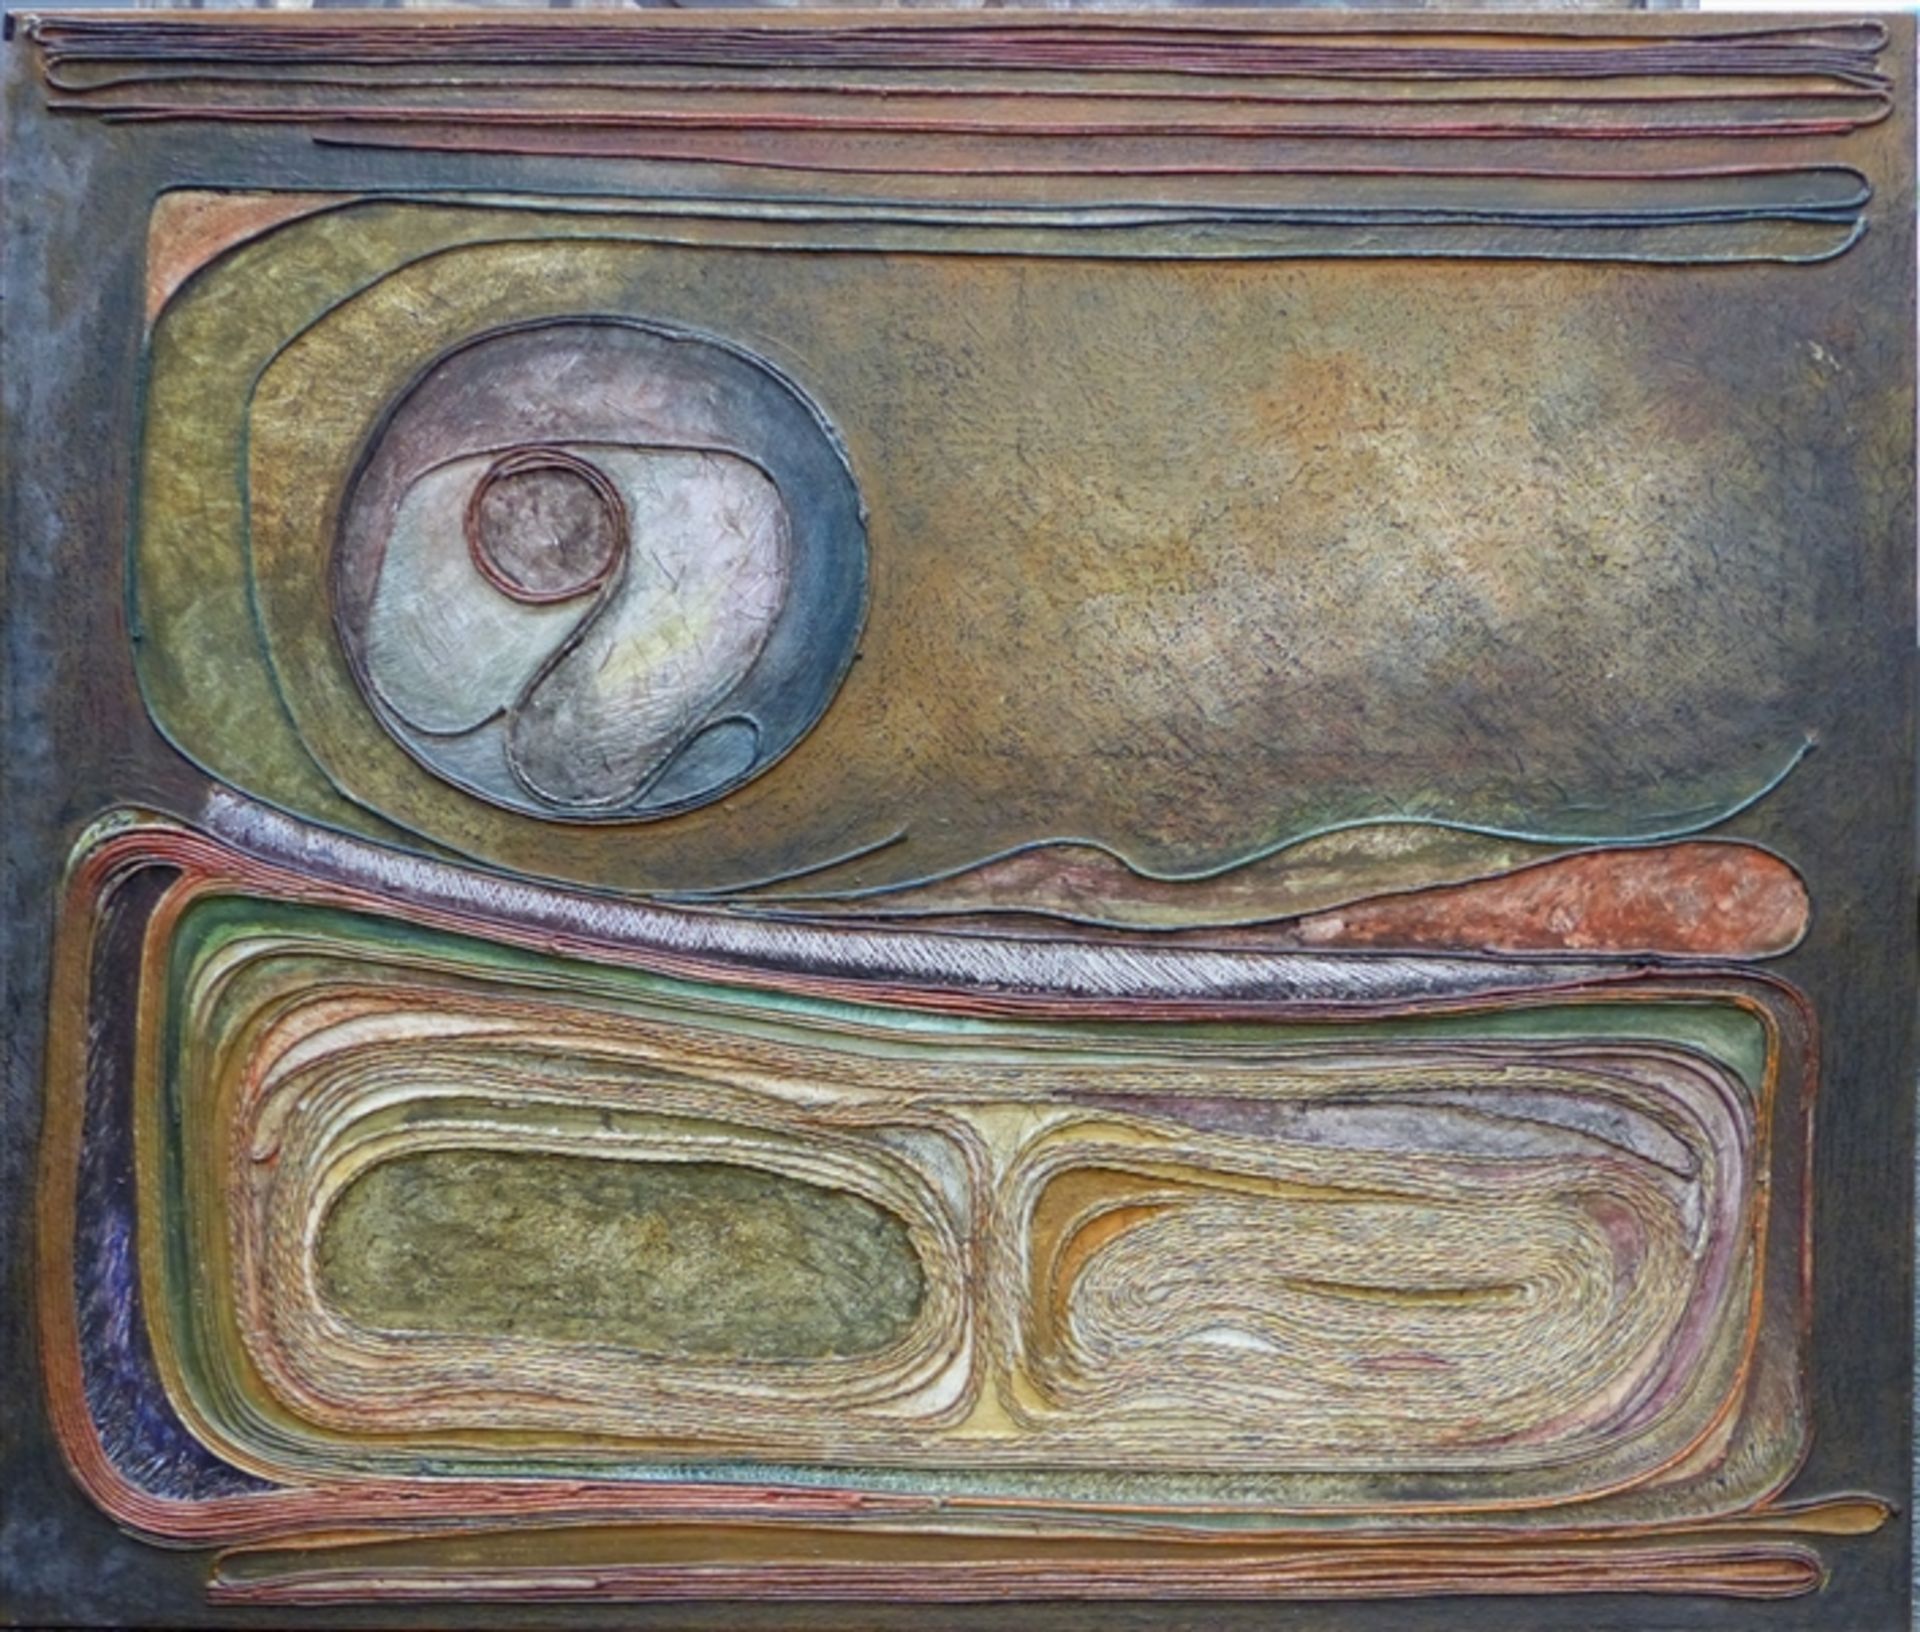 Unbekannt, 20. Jh. Mischtechnik/Collage auf Leinwand, abstrakte Komposition mit Schnüren, 81x97 cm,